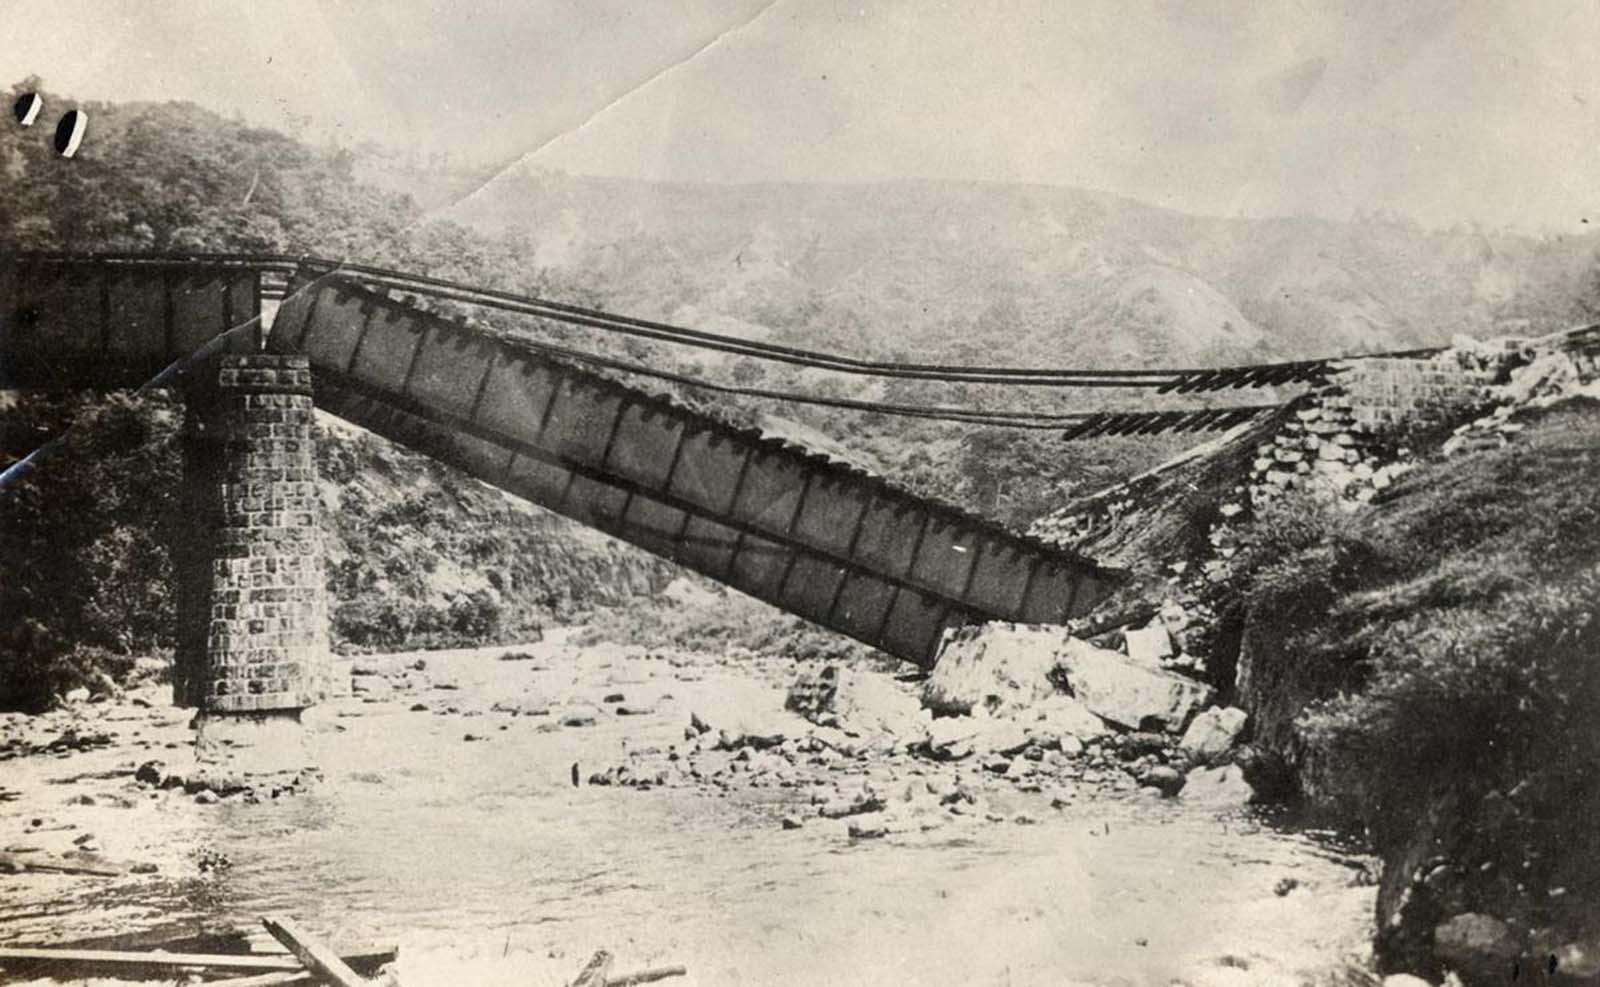 Le Grand Tremblement de terre de Kanto, qui a dévasté le Japon, 1923